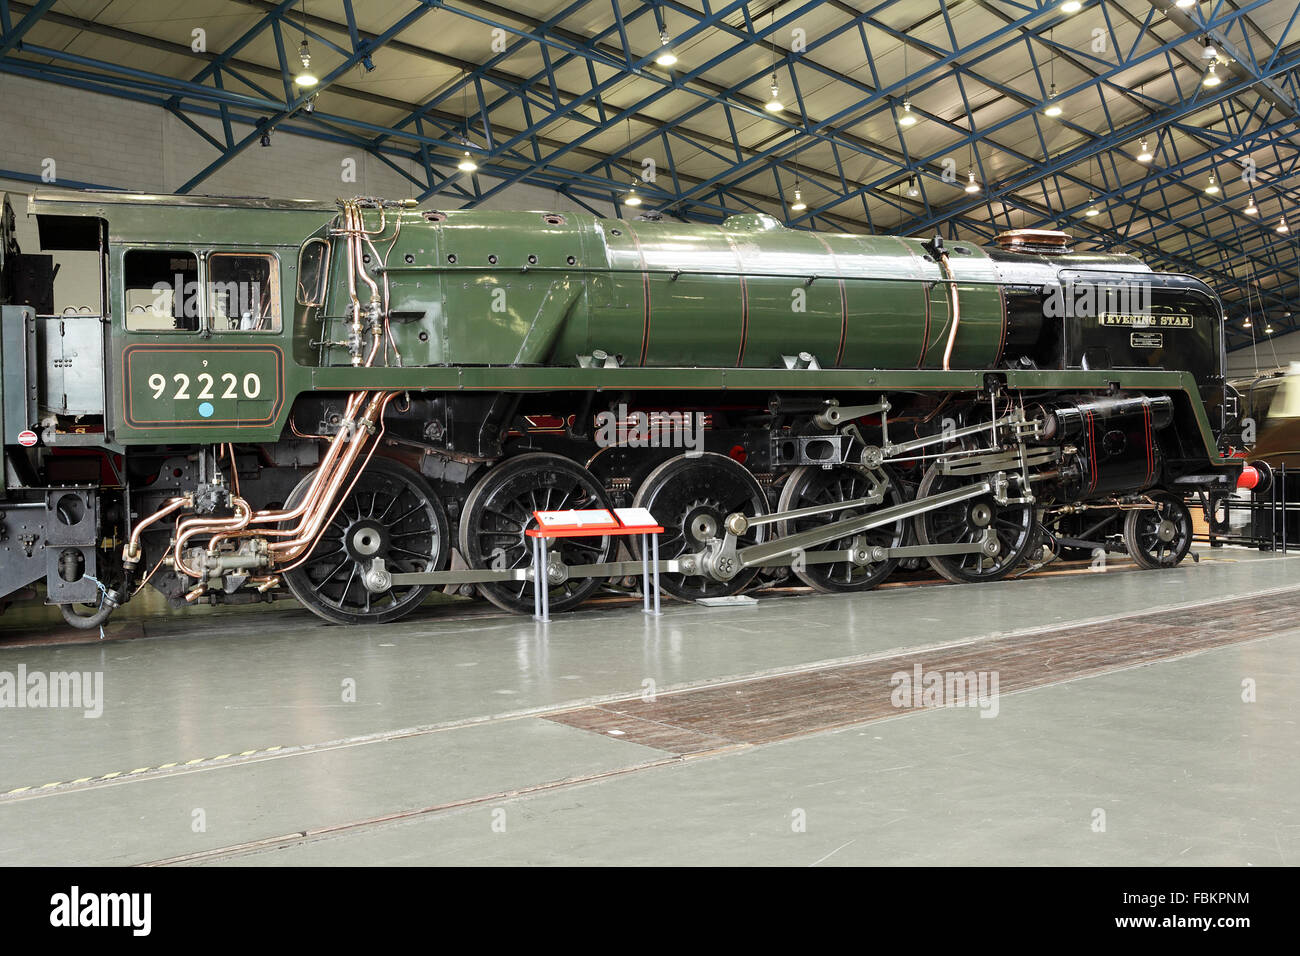 Immagine della storica "evening standard', un'altra meraviglia ingegneristica presso il museo nazionale delle ferrovie, York, Inghilterra. Foto Stock